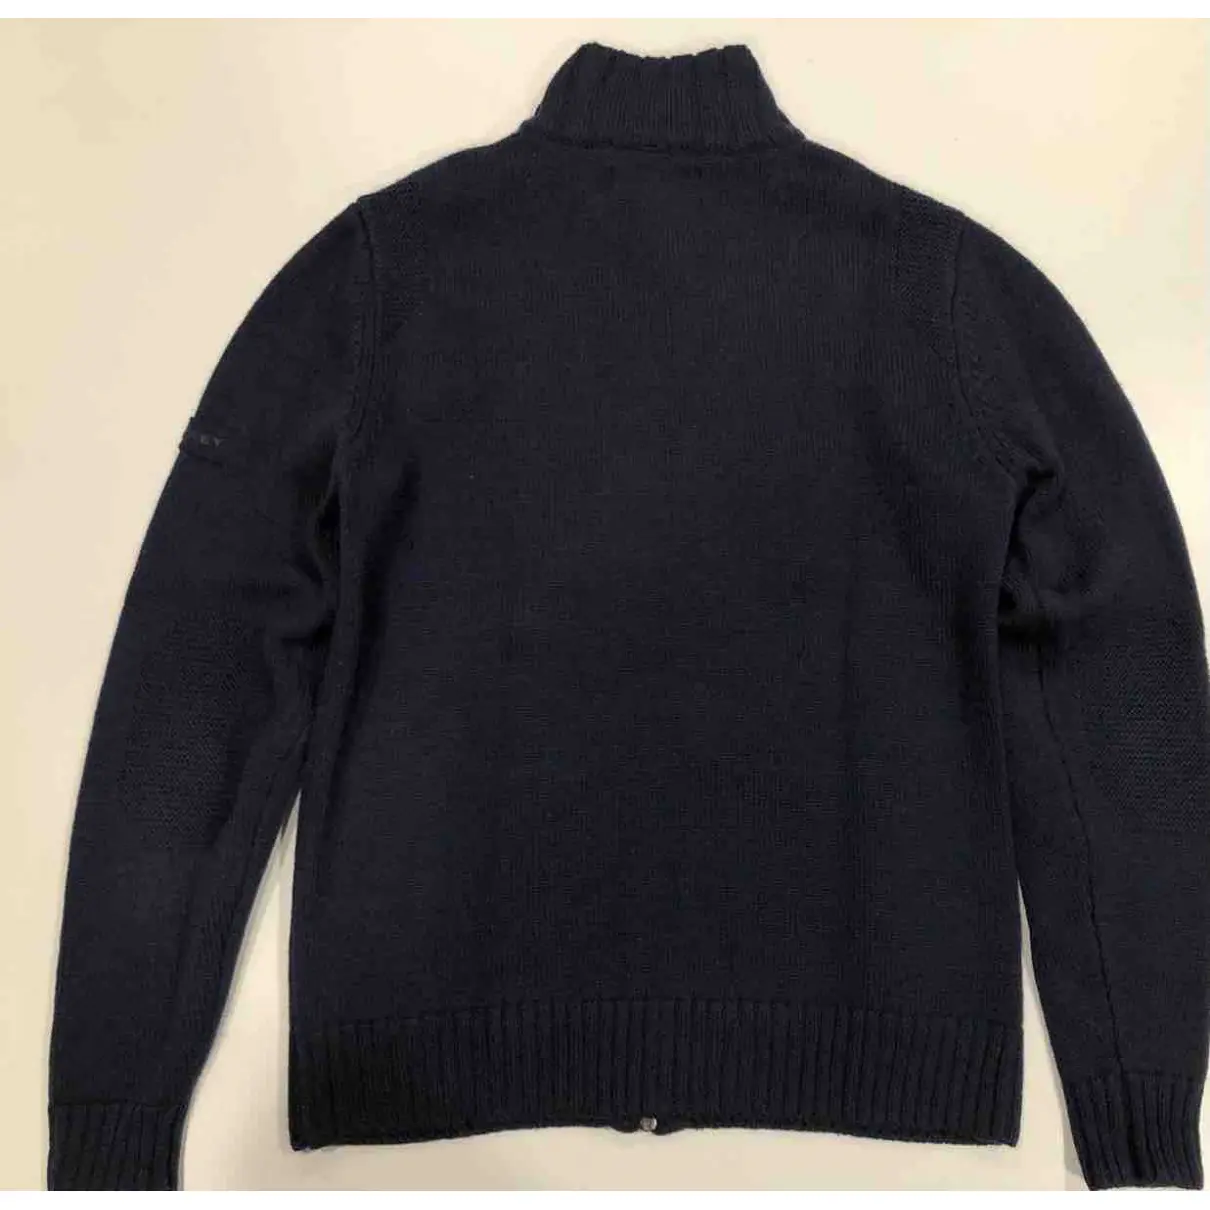 Buy Peuterey Wool knitwear & sweatshirt online